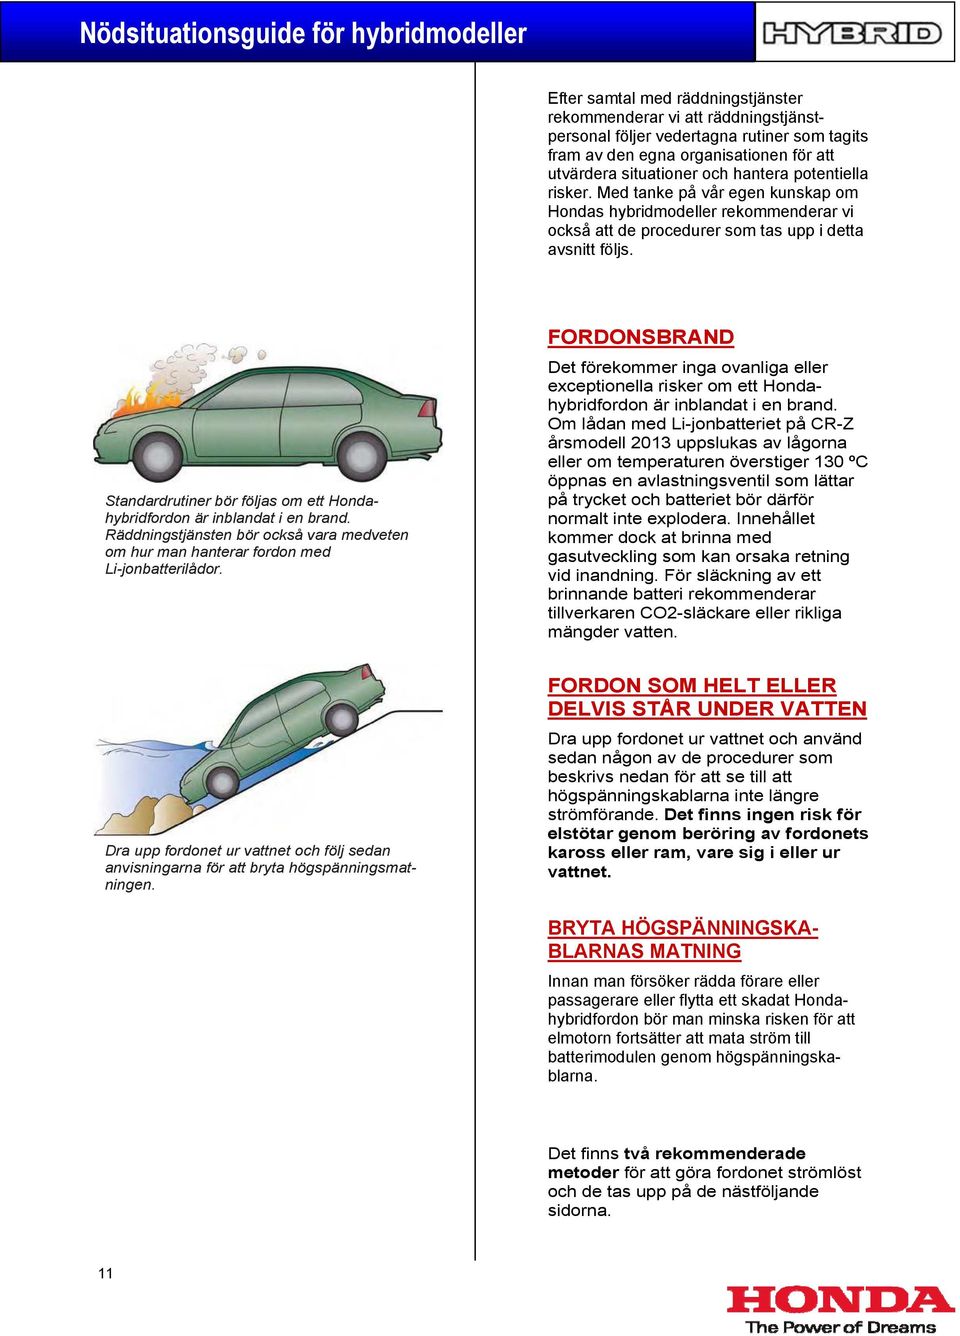 Standardrutiner bör följas om ett Hondahybridfordon är inblandat i en brand. Räddningstjänsten bör också vara medveten om hur man hanterar fordon med Li-jonbatterilådor.